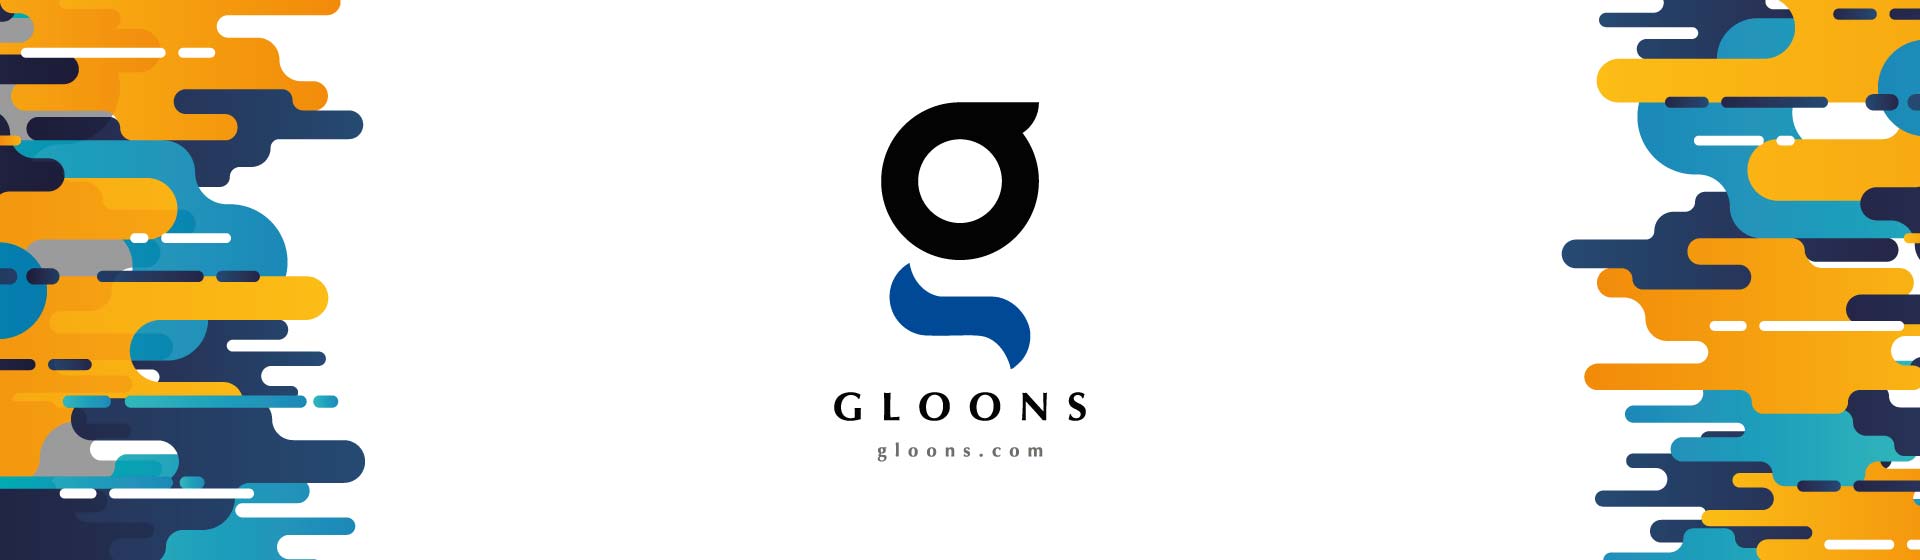 Gloons Branding name